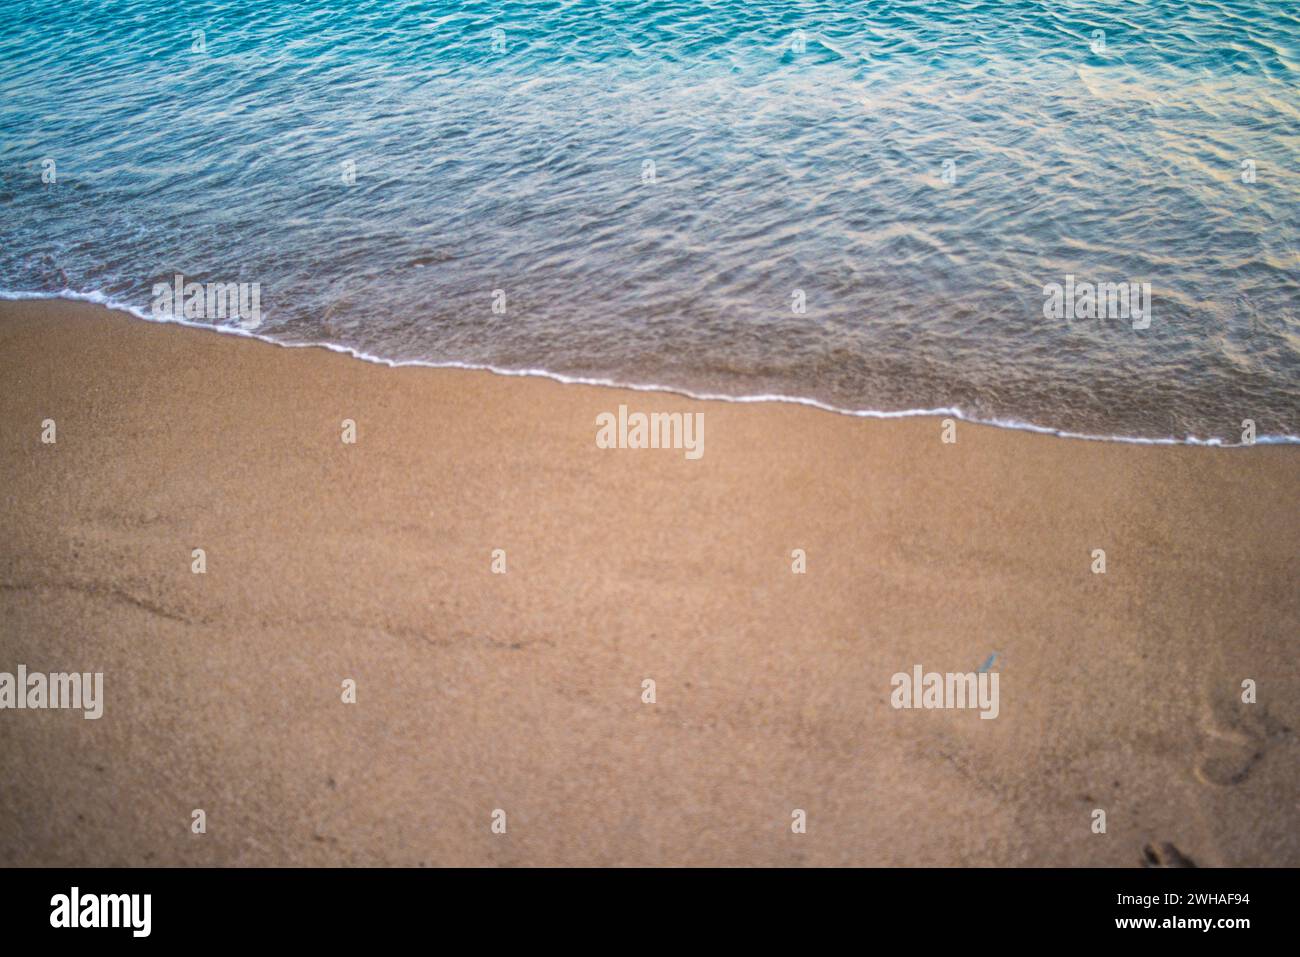 Une scène tranquille comme les gens profitent d'un coucher de soleil nager dans la mer calme, baigné dans les teintes chaudes du crépuscule, créant une atmosphère côtière sereine. Banque D'Images